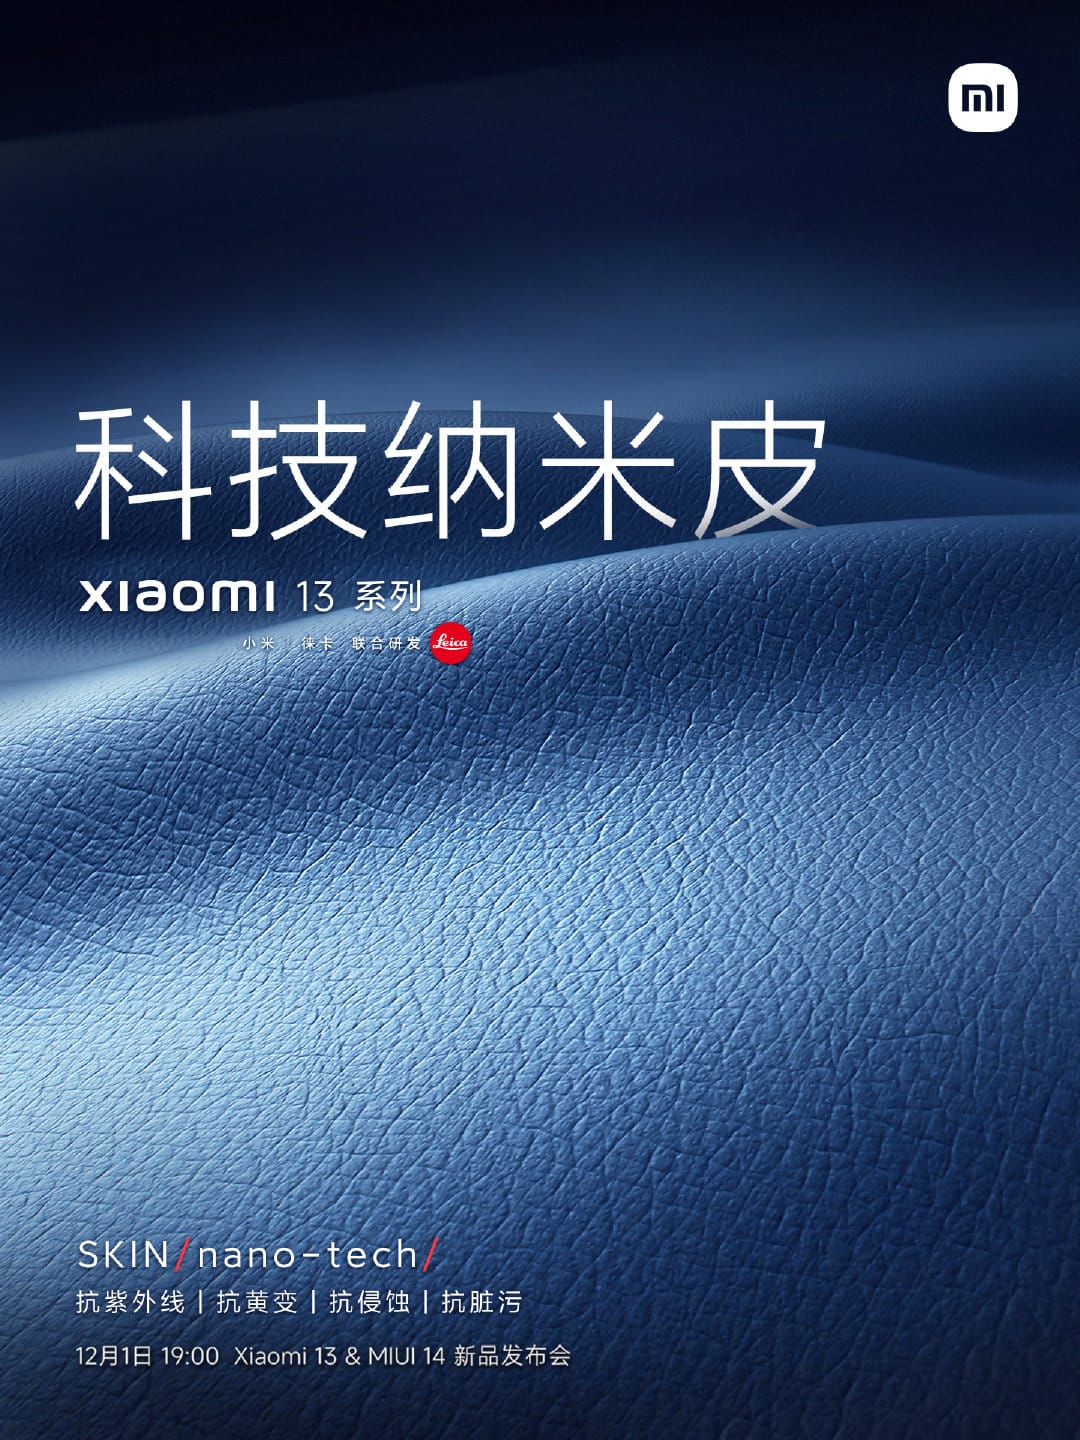 Xiaomi Mi 13 skin